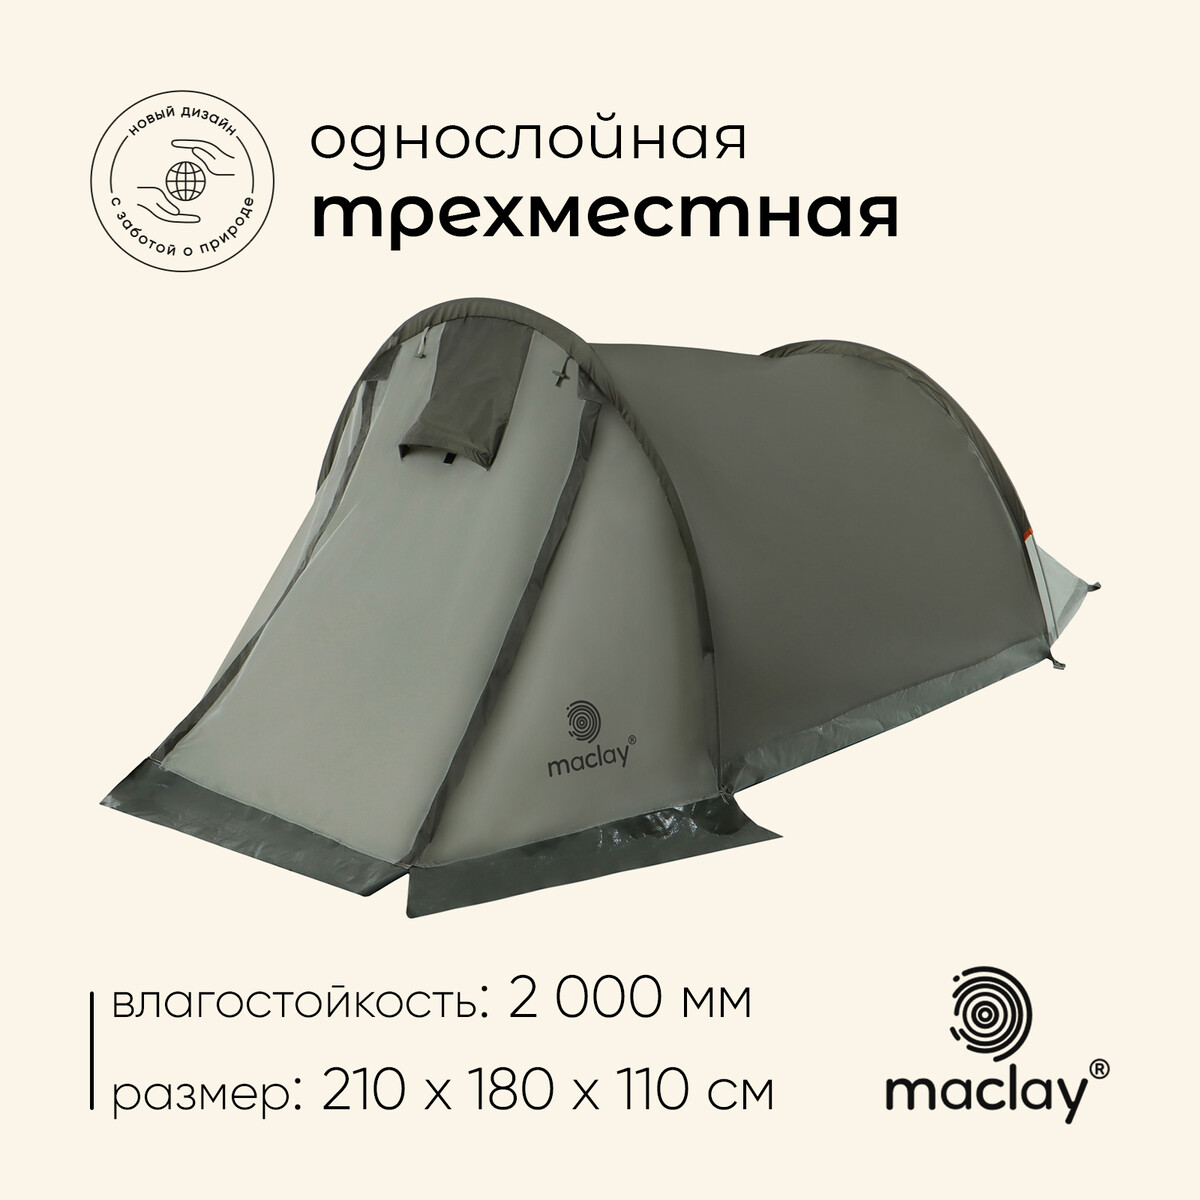 Палатка треккинговая maclay kama 3, 210х180х110 см, 3-местная Maclay, цвет зеленый